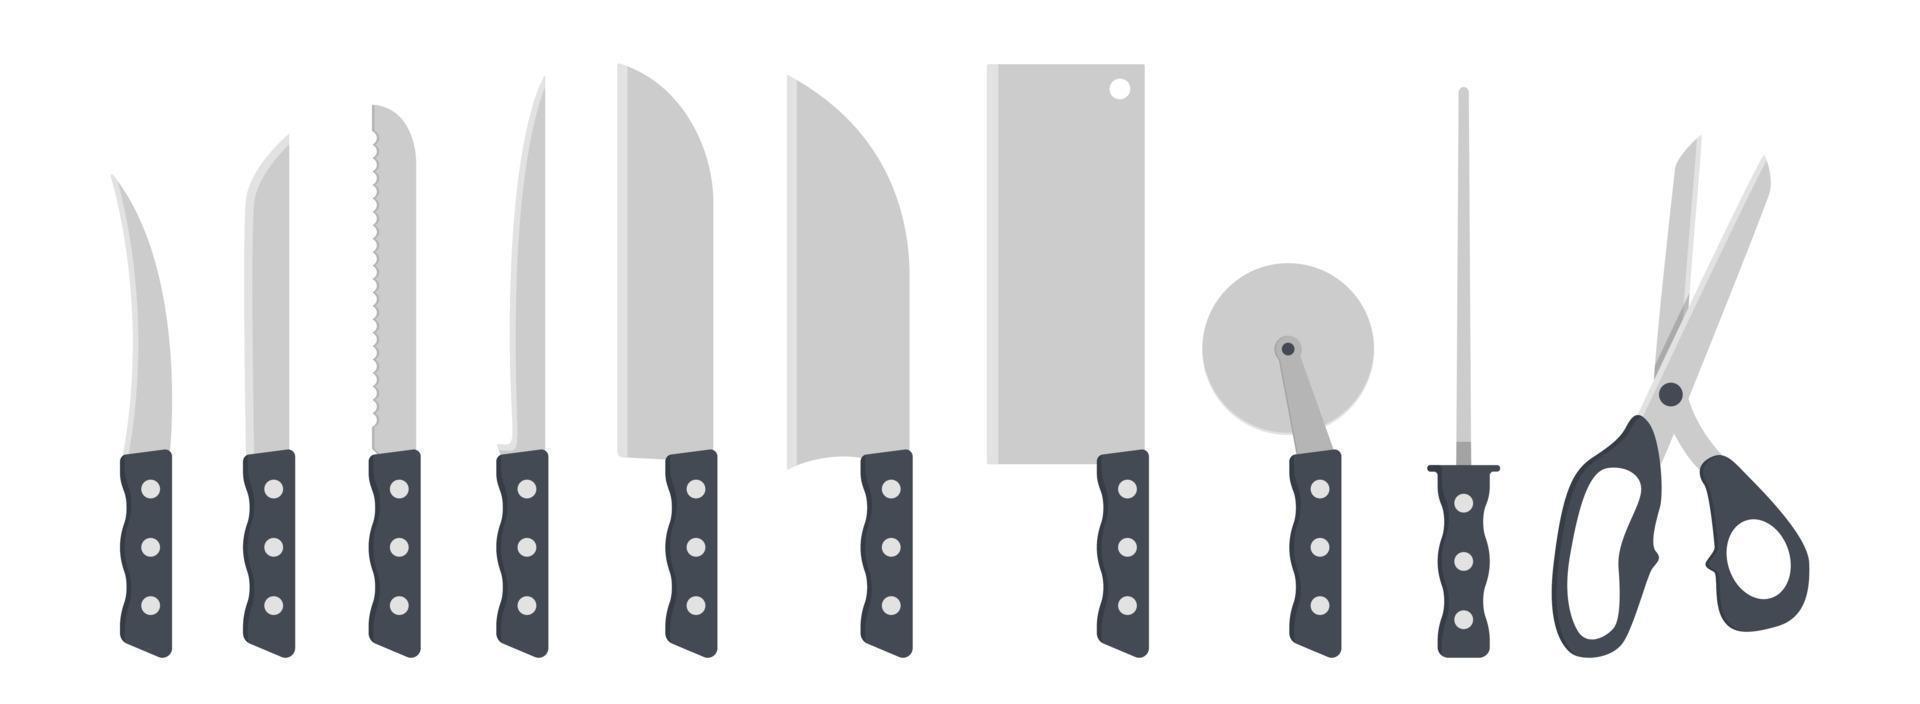 uppsättning av kök knivar ClipArt vektor illustration. kniv med plast hantera platt design. skal, grönsak, filea, santoku, köttyxa, pizza fräs, kniv pennvässare, sax. kök begrepp ikon logotyp